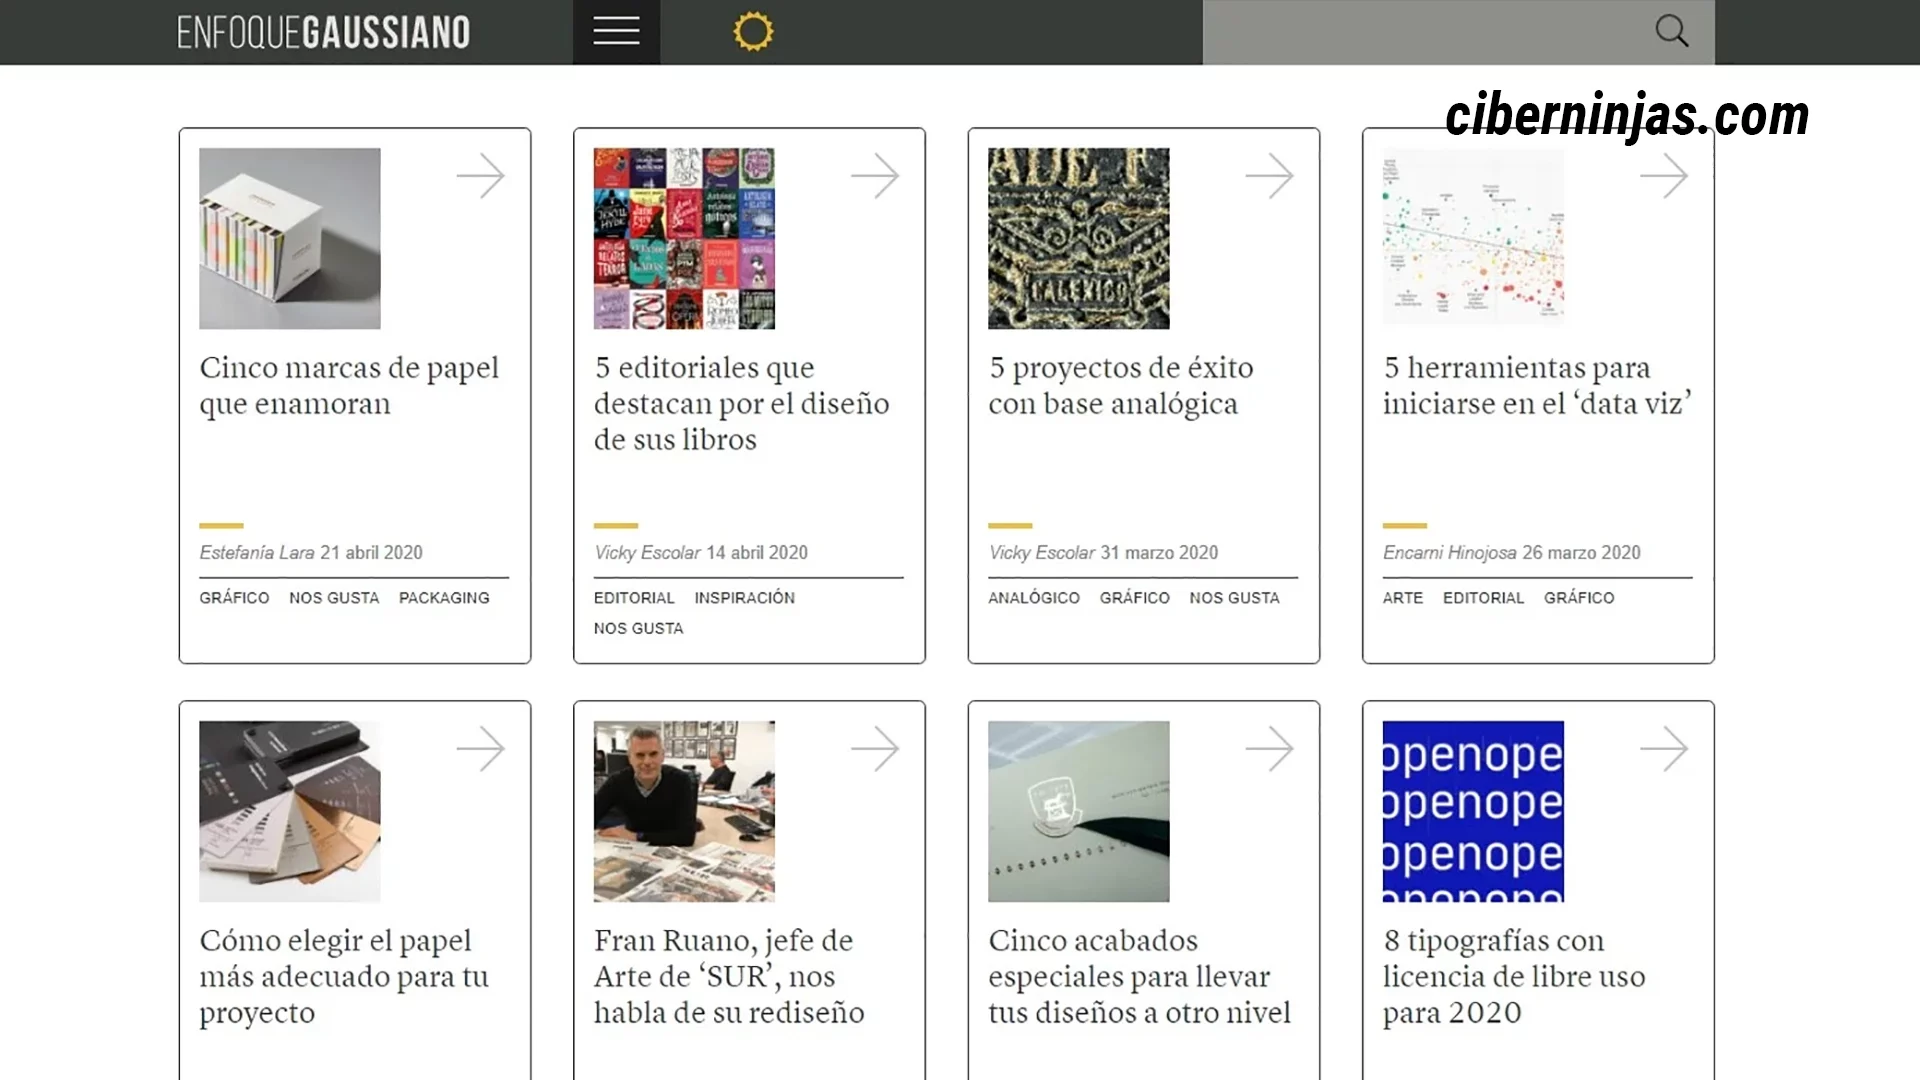 Enfoque Gaussiano: Uno de los mejores blogs de diseño en español